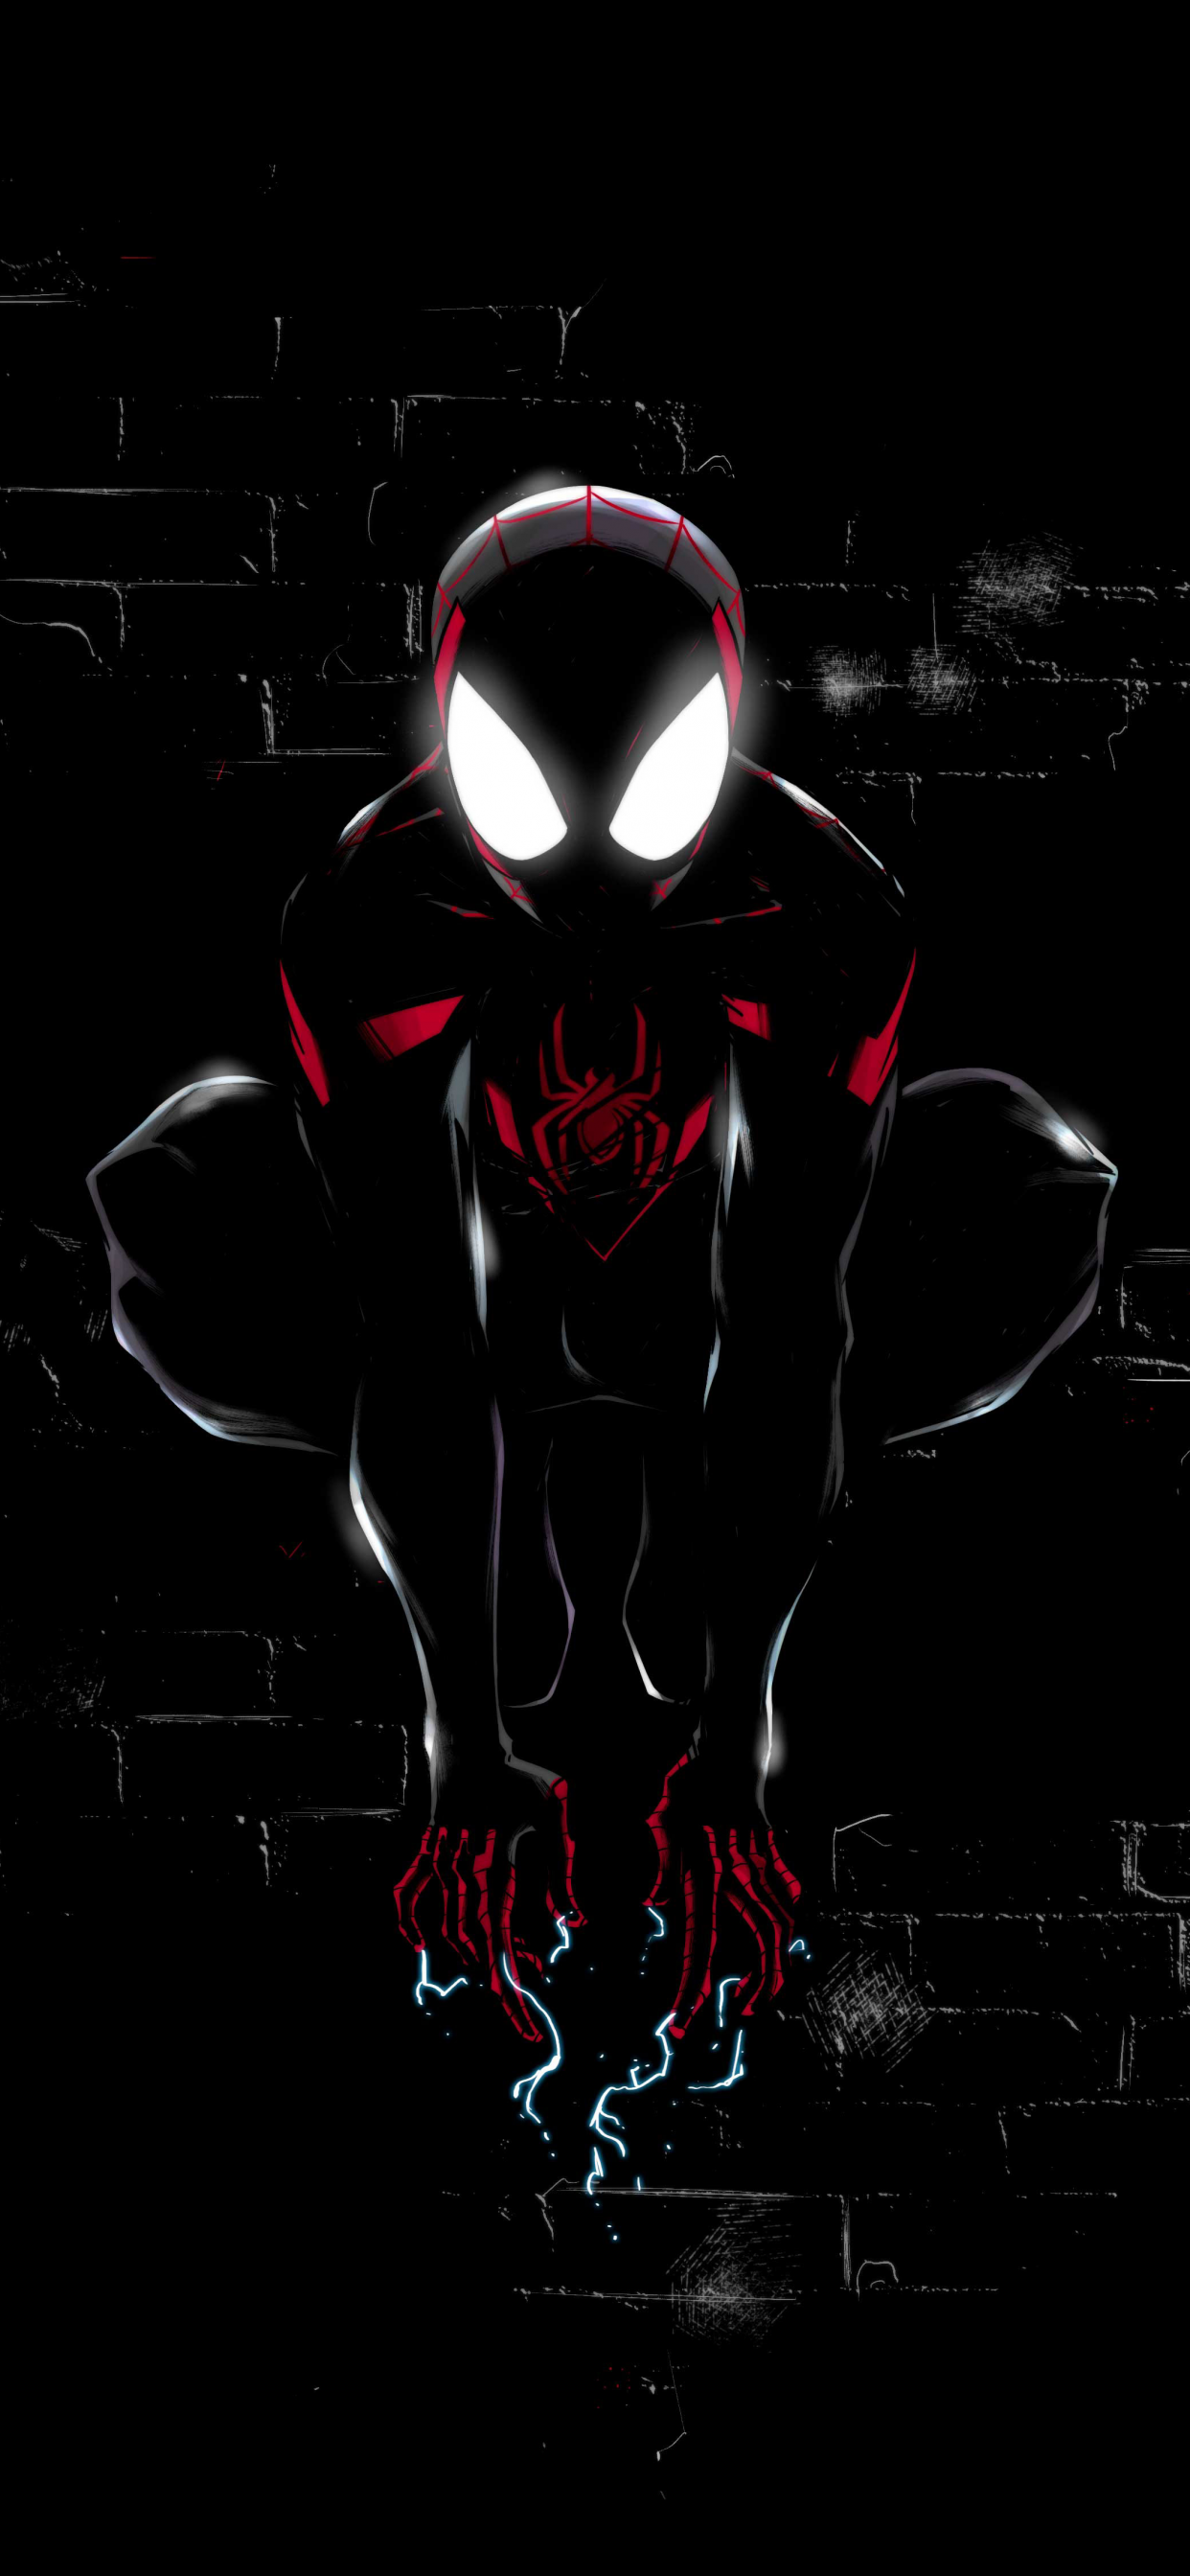 SpiderMan iphone wallpaper by SailorTrekkie92 on DeviantArt